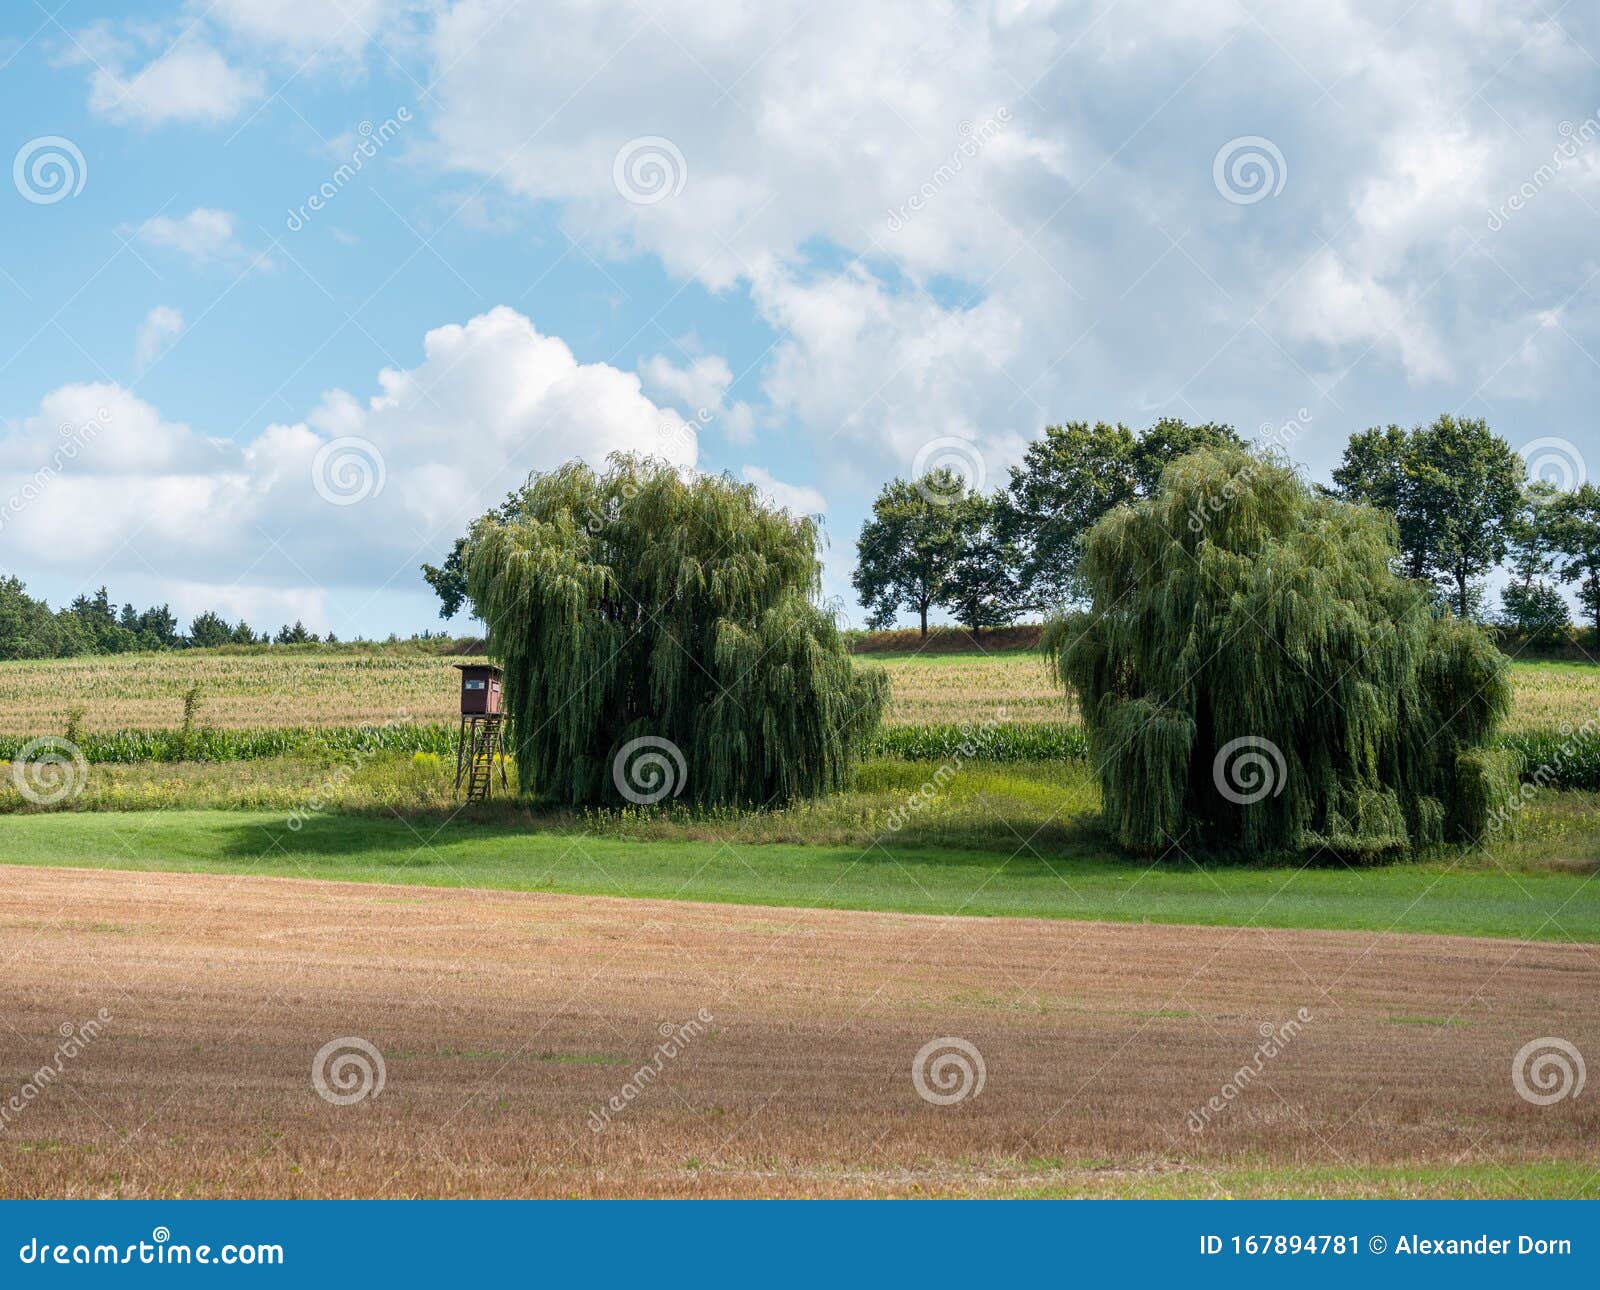 Imagen del paisaje con campos y sauces llorosos y un alto asiento. Imagen del paisaje con campos y sauces llorosos y un asiento elevado durante el día